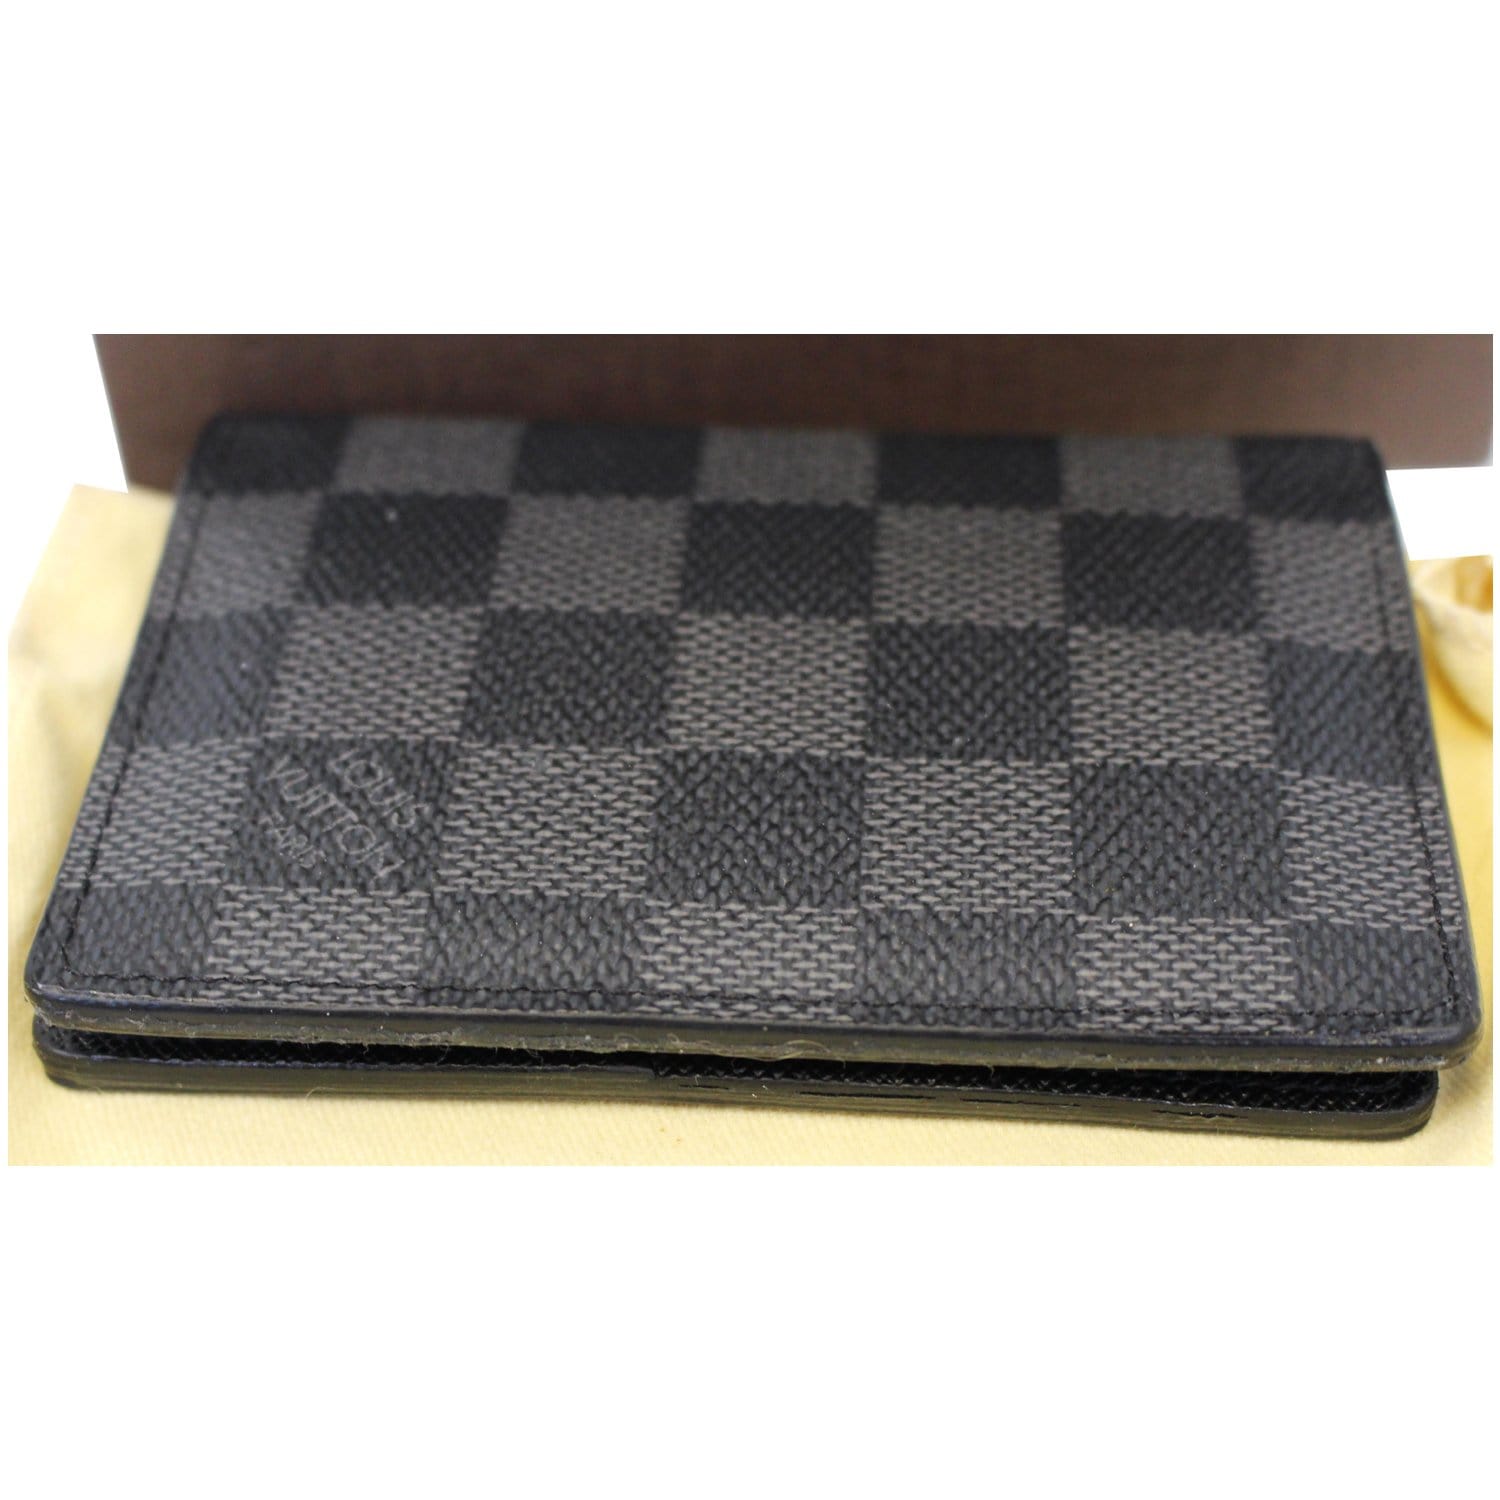 Louis Vuitton Damier Graphite Canvas Leather Folding Wallet Card Holders, Black